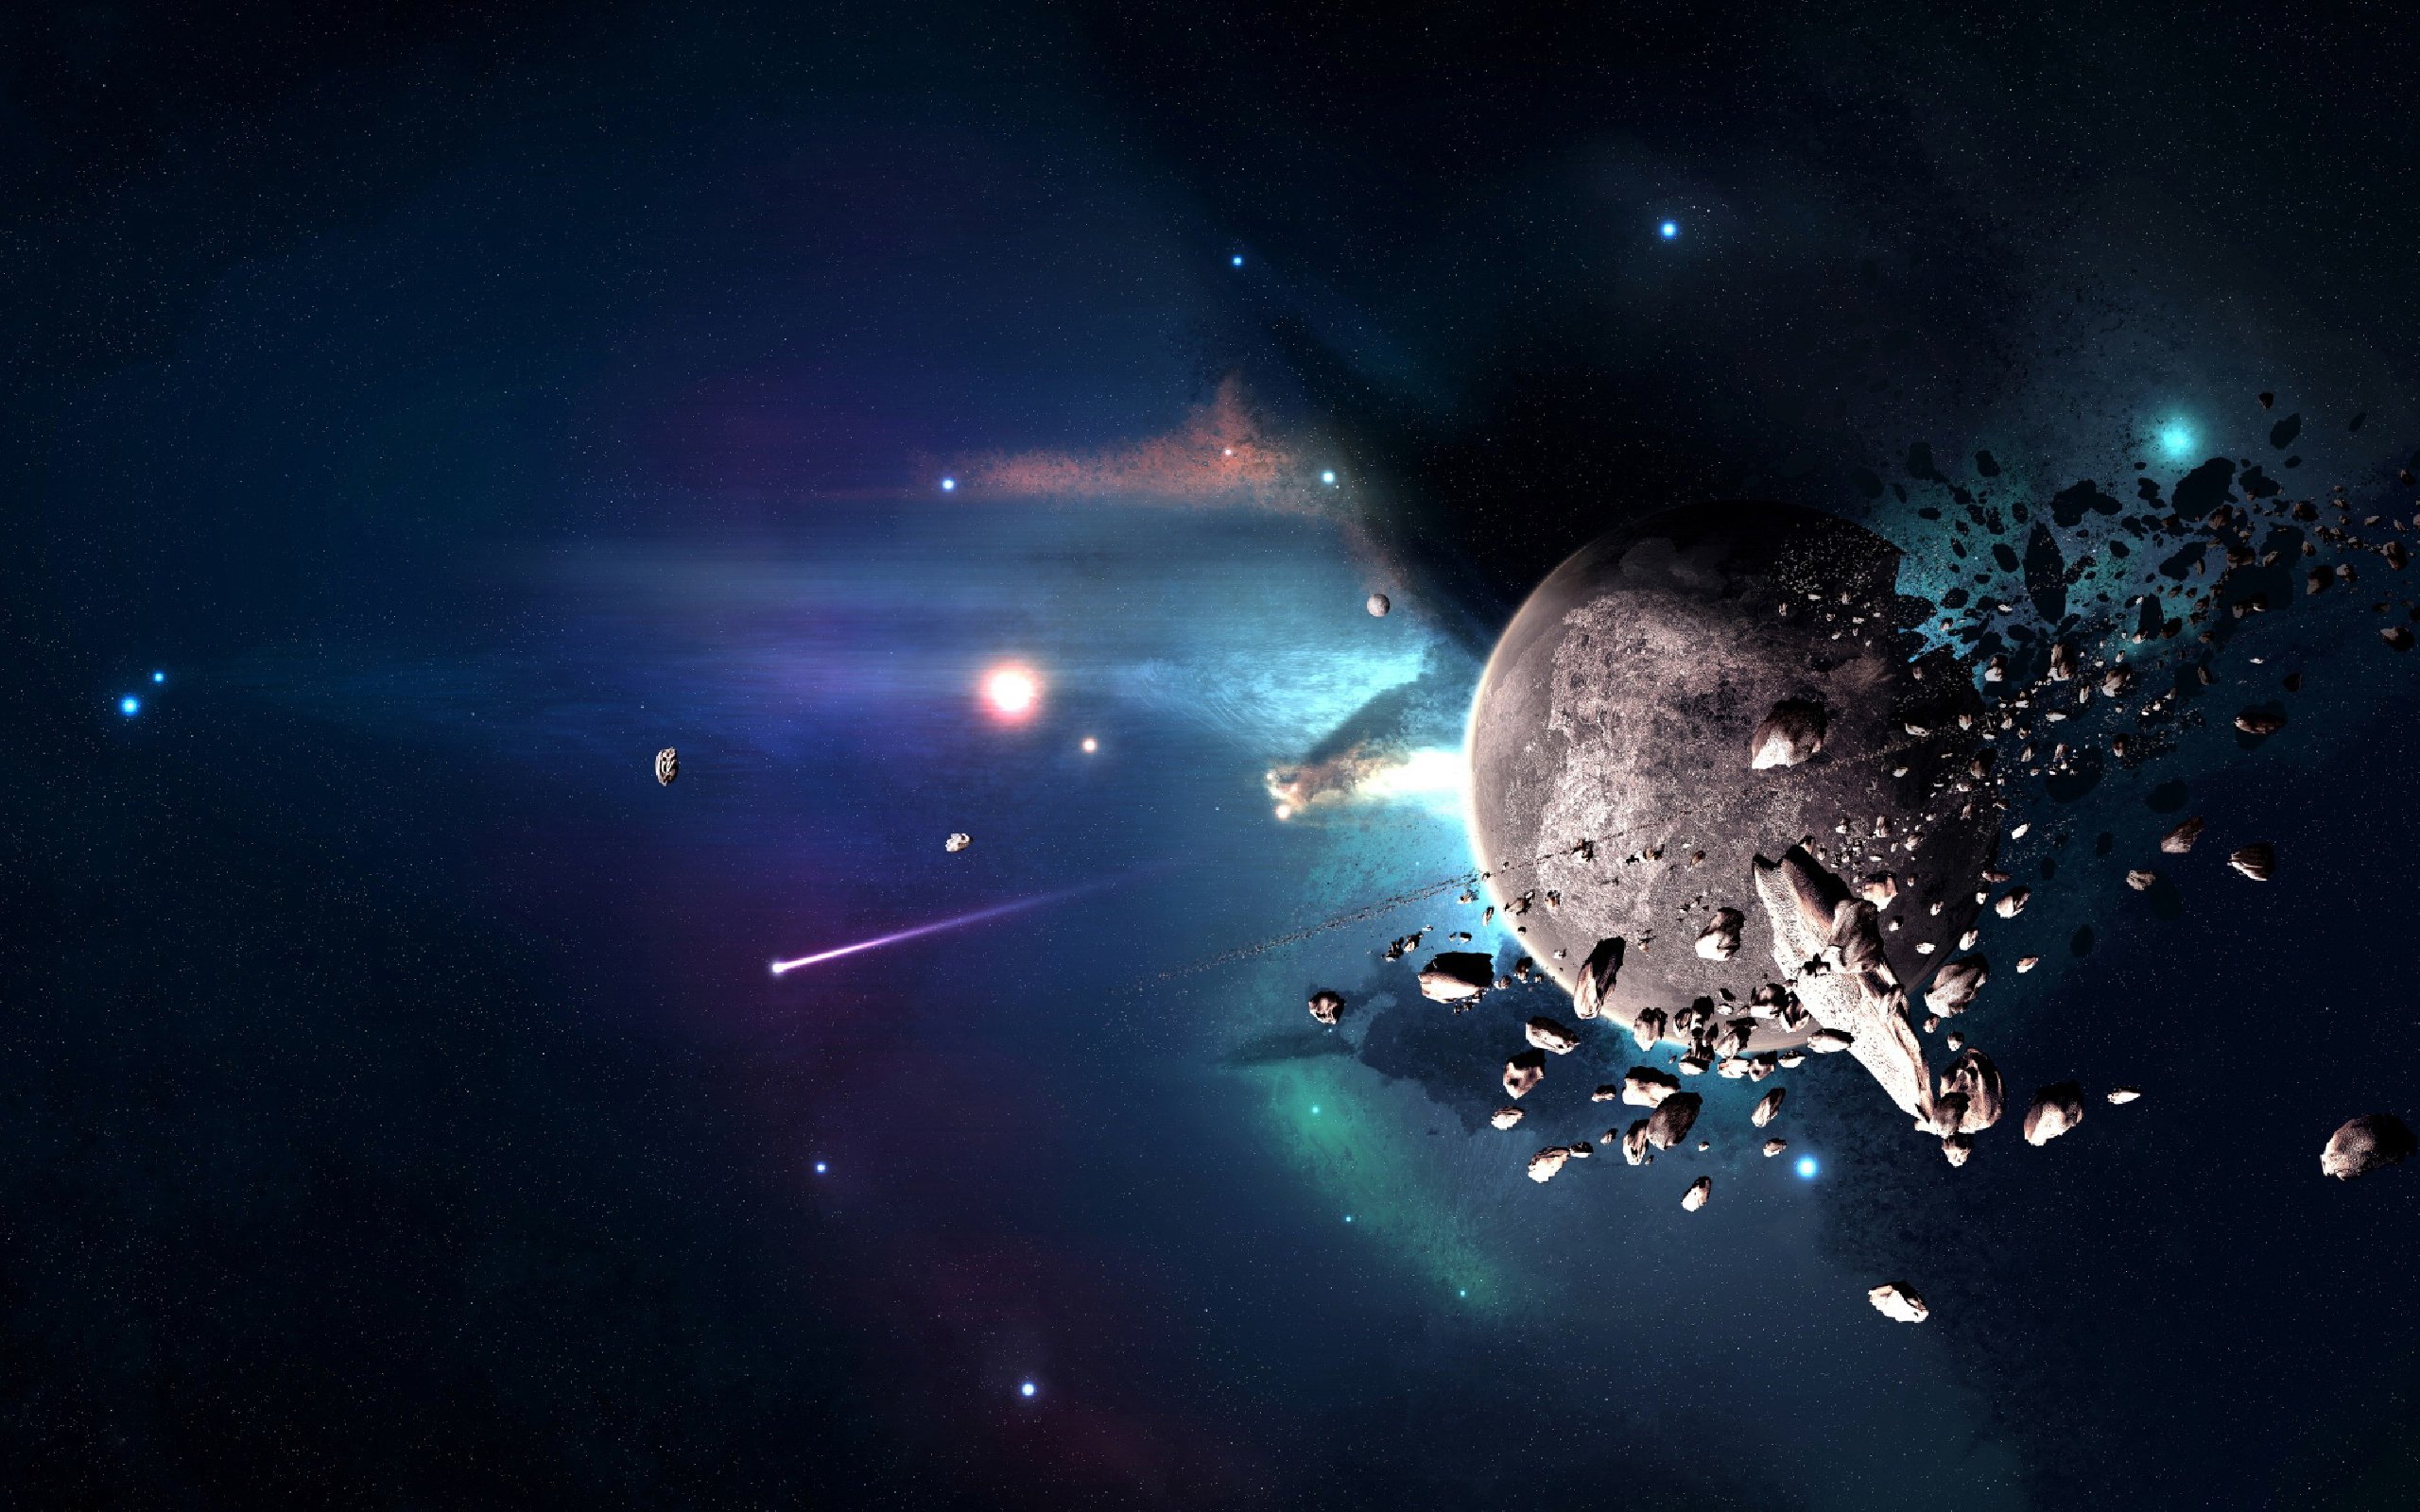 Обои Взрывающаяся планета картинки на рабочий стол на тему Космос - скачать бесплатно